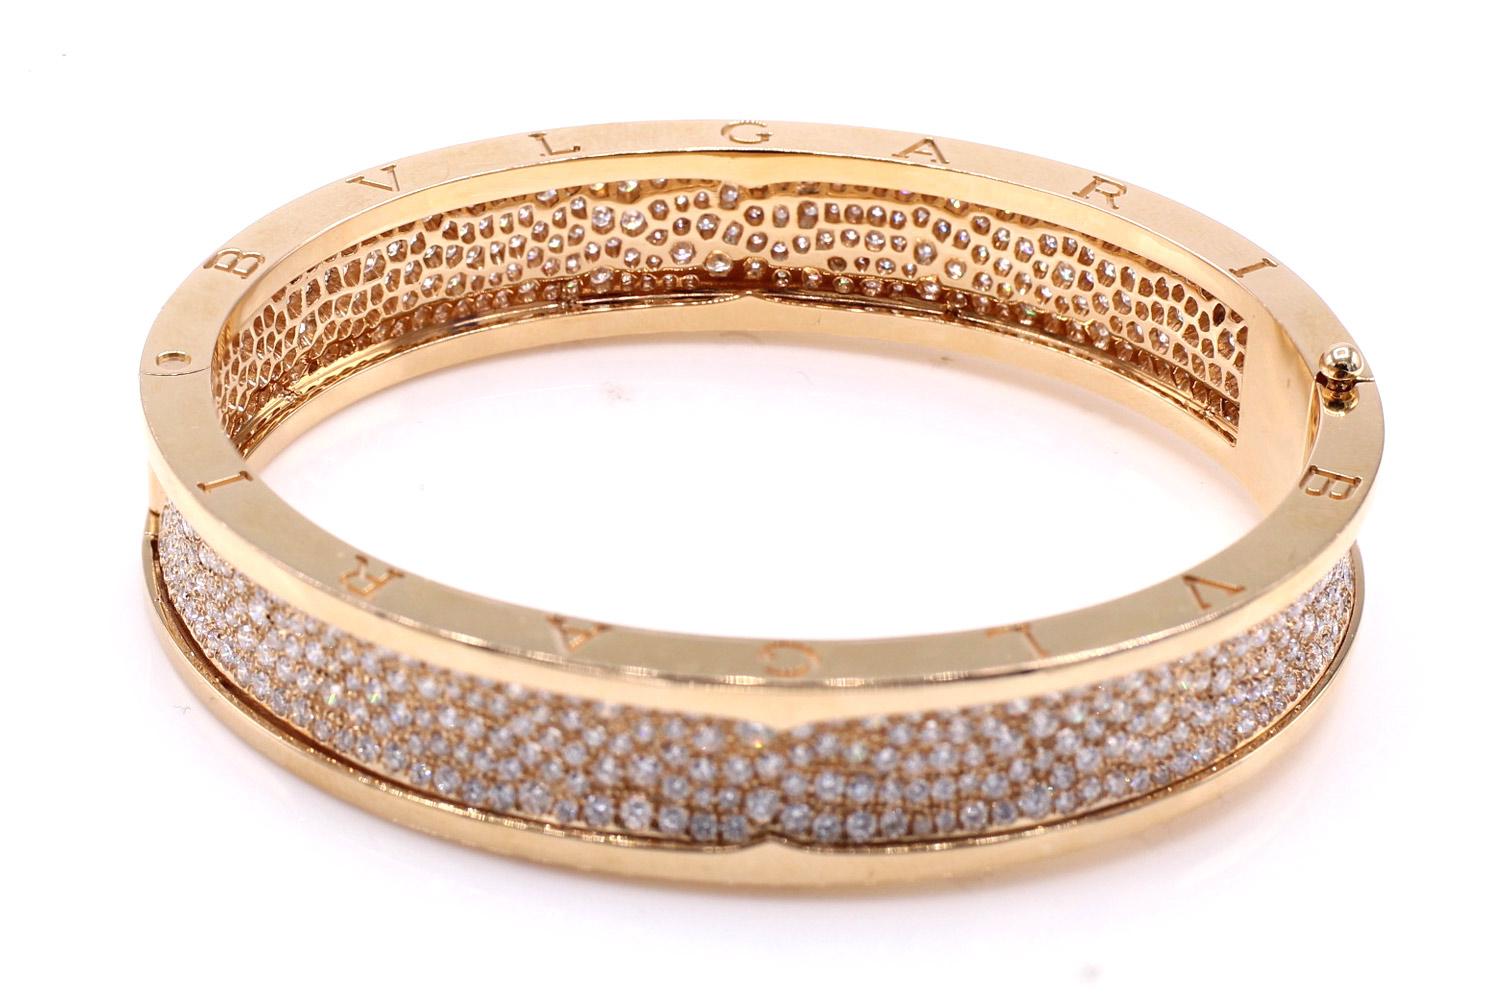 Fabriqué de main de maître en or rose 18 carats par le célèbre joaillier italien Bulgari. Ce bracelet très à la mode et extrêmement chic est la plus grande taille, 19, du modèle BZERO1 et contient 11,60 carats de fins diamants ronds de taille